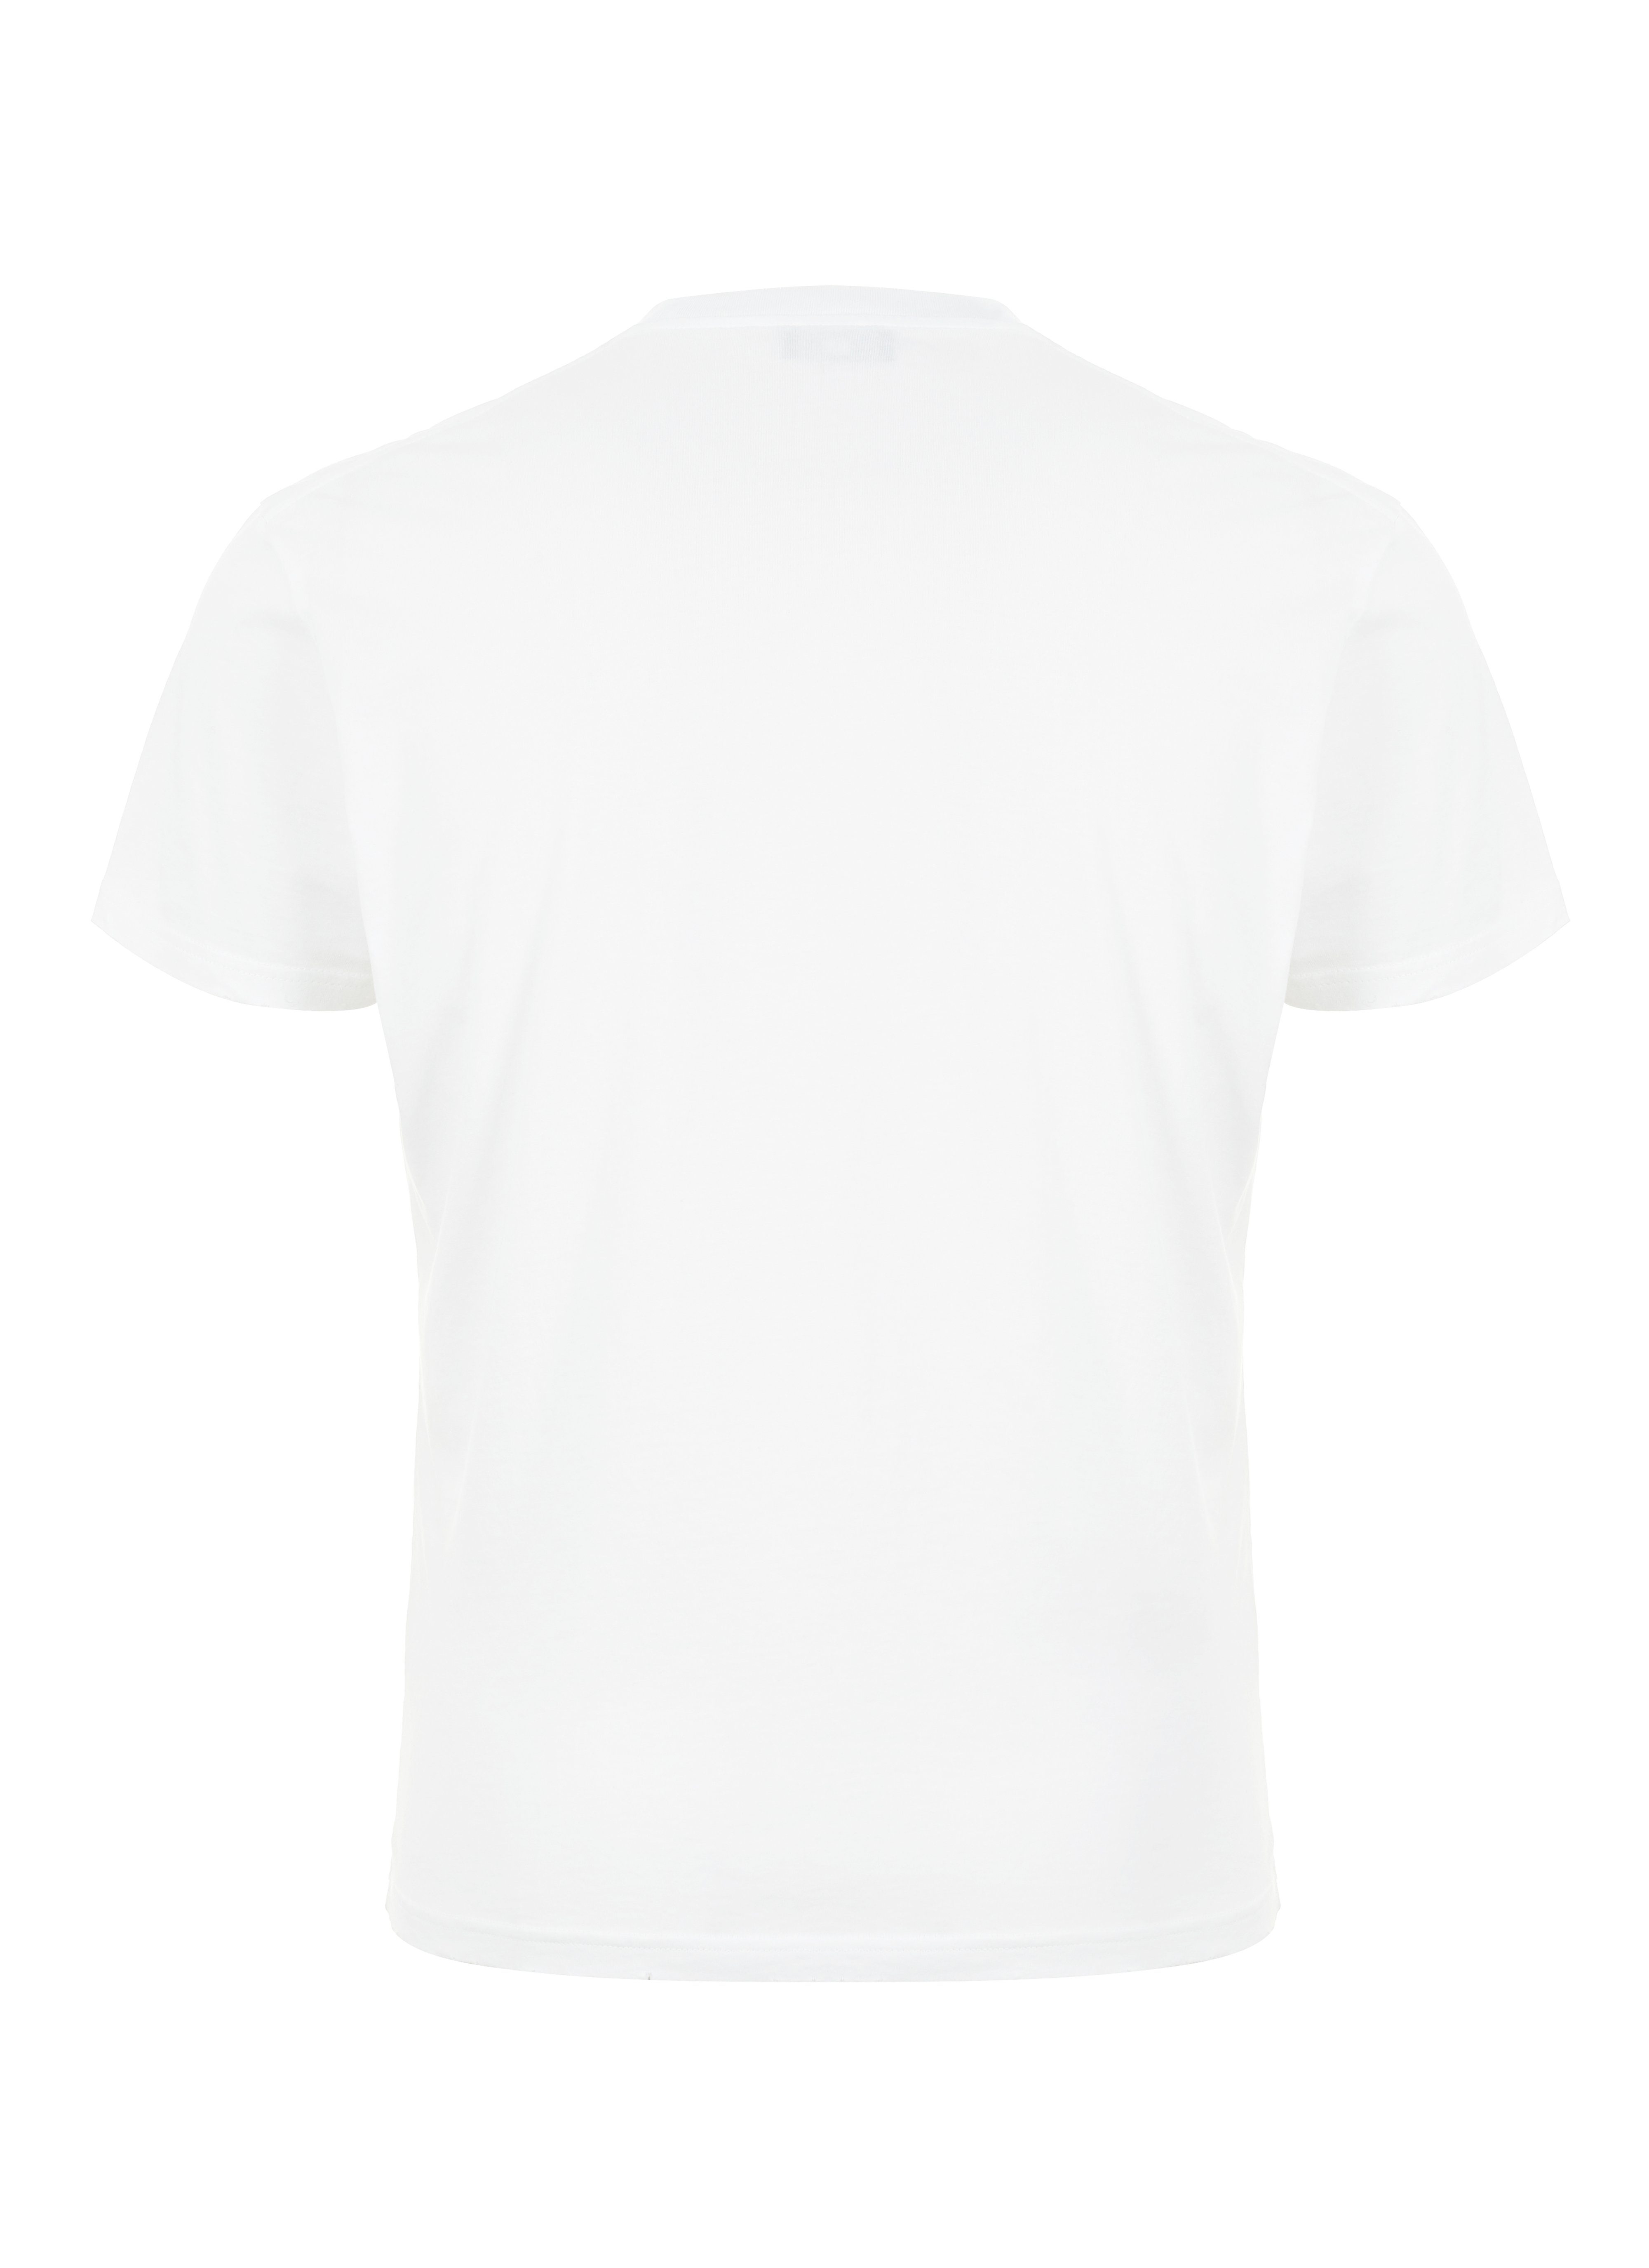 T-Shirt Brand in RAD Chiccheria Weiß Designed LA,